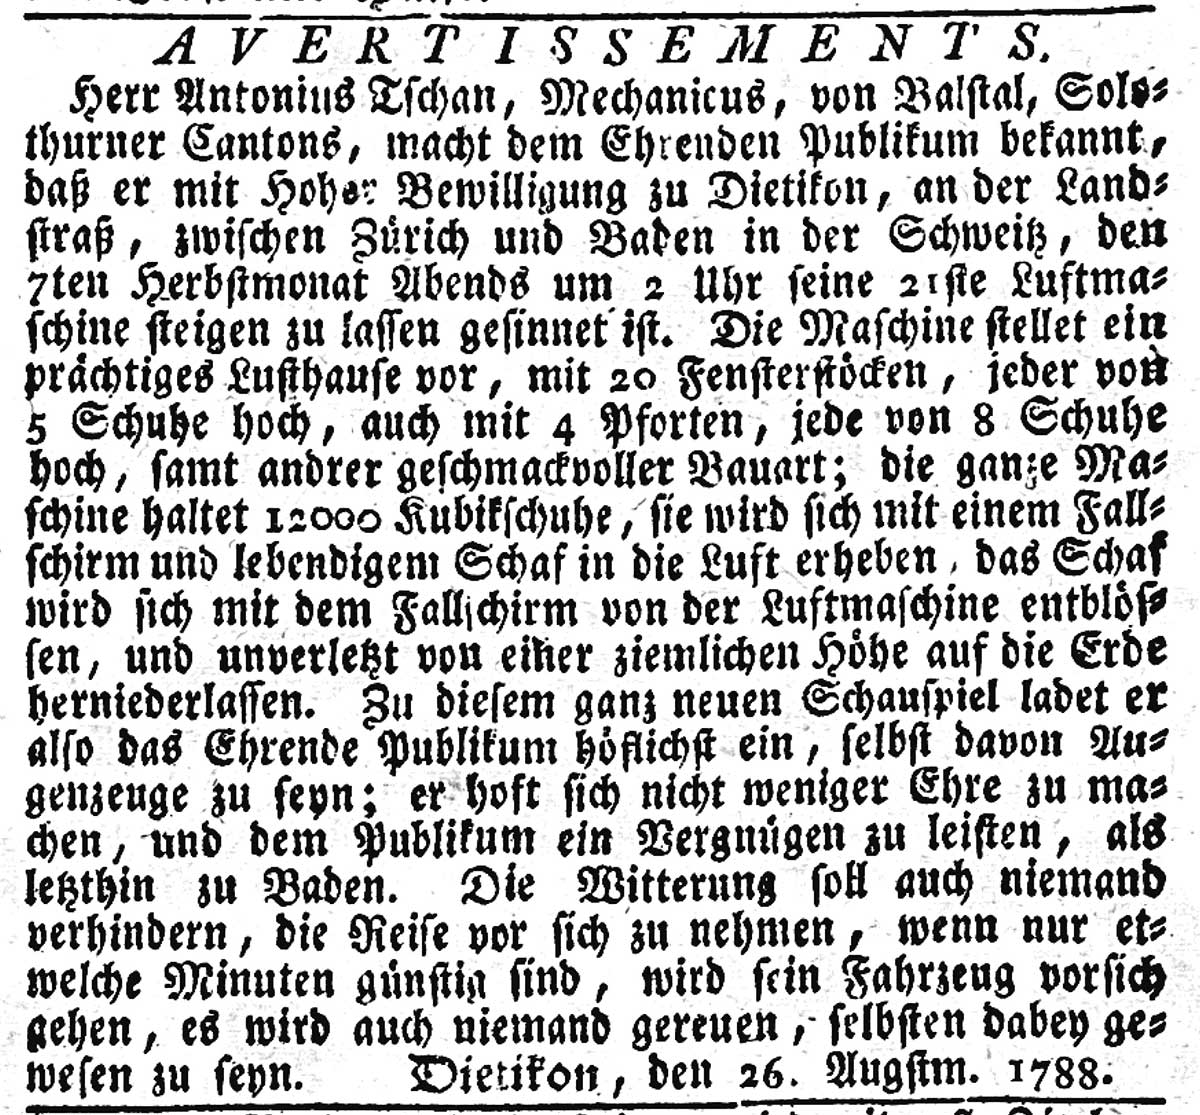 Anzeige der Tschann-Brüder in der NZZ, 1788.